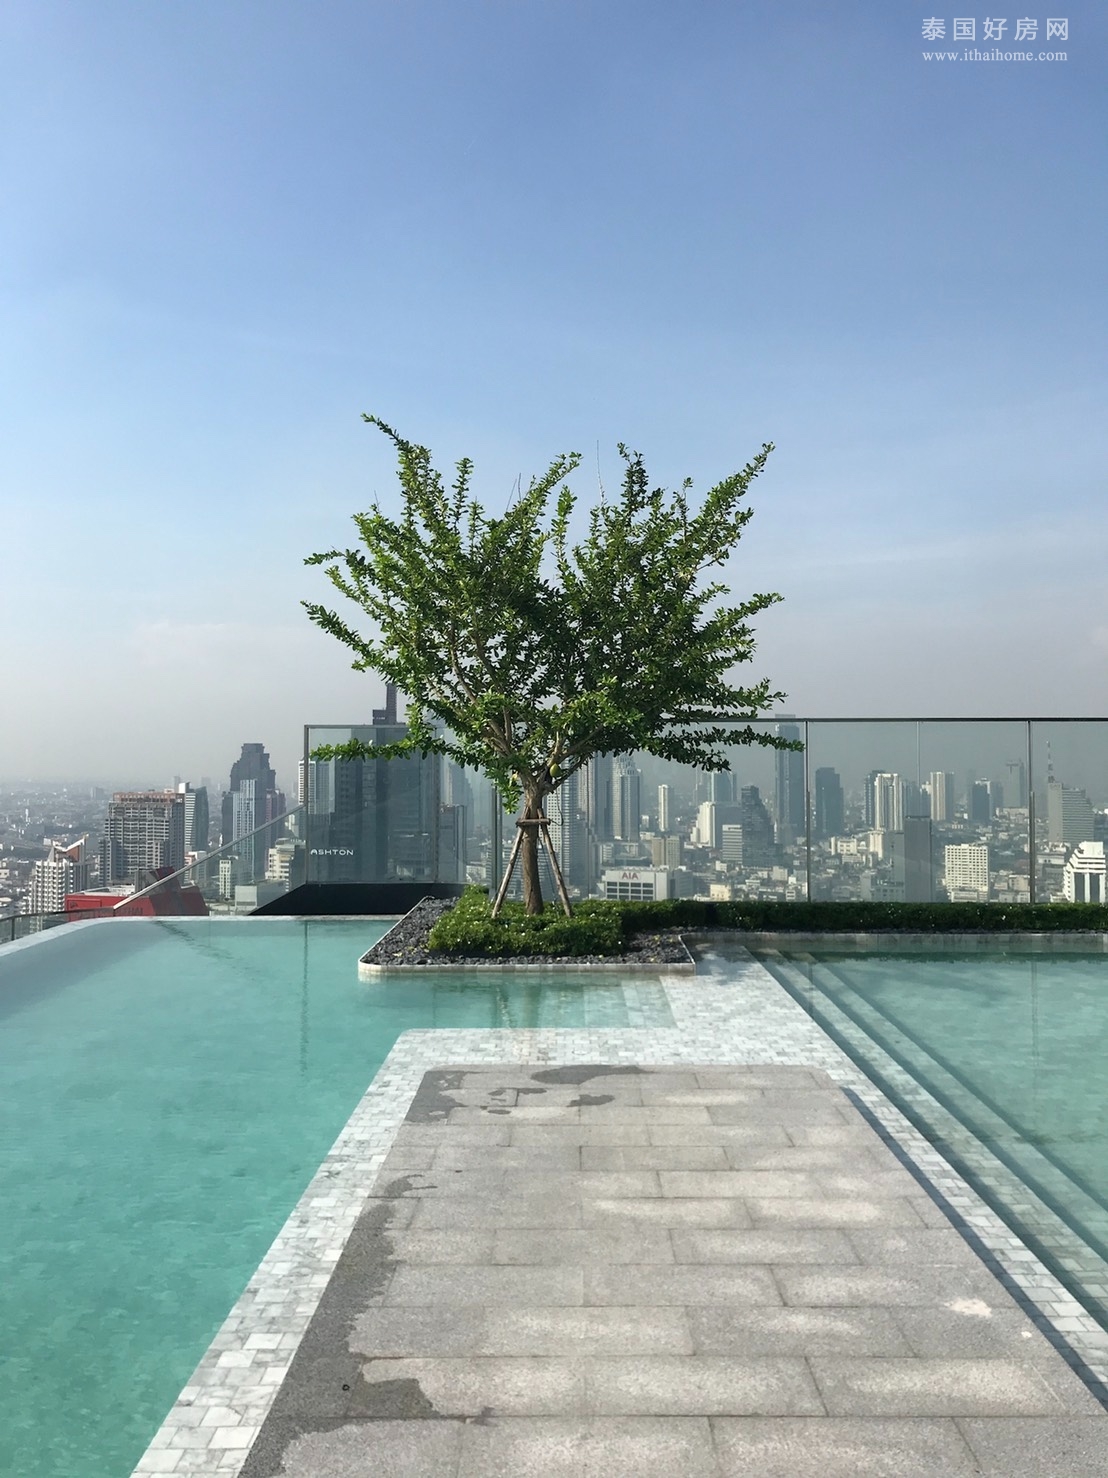 【推荐】Silom高端公寓出租 1卧28平米 22000铢/月